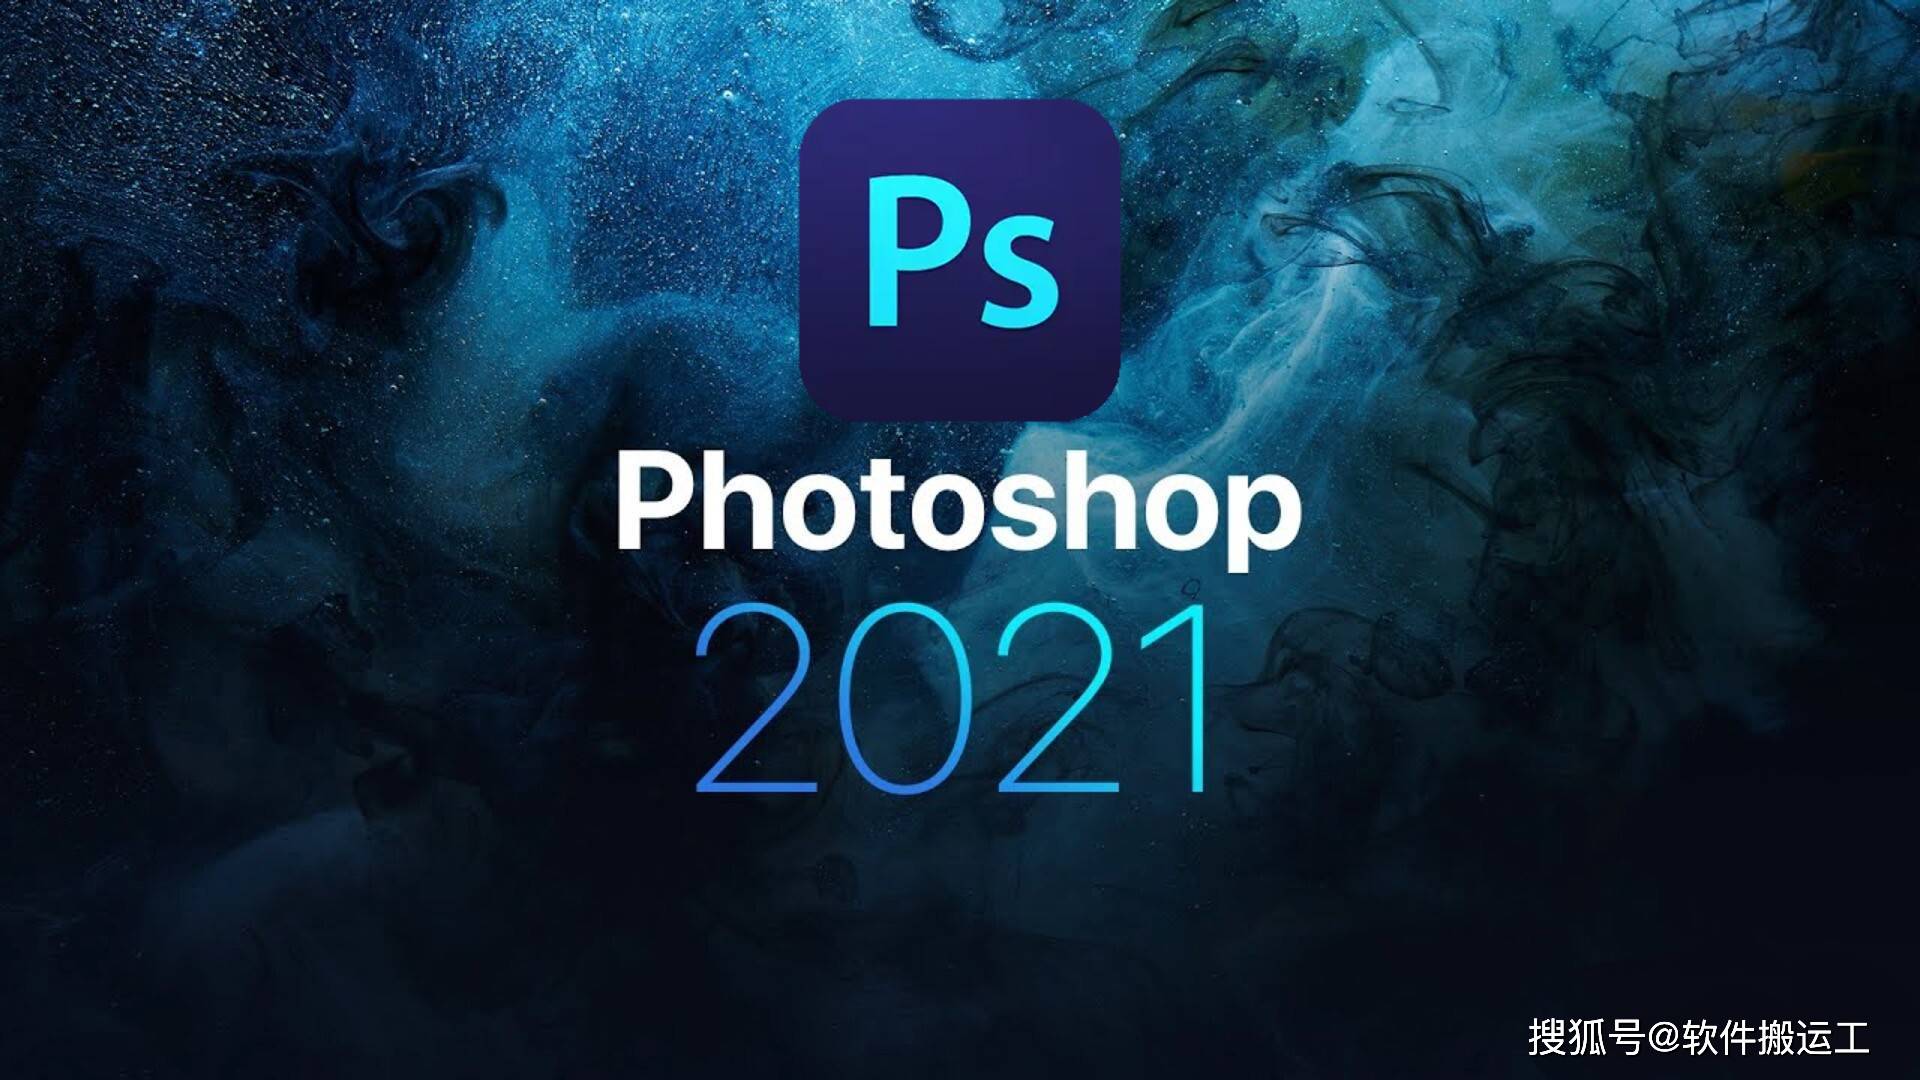 下载像素狙击破解版苹果:Adobe Photoshop CC 2021（PS CC2021）中文破解版安装包下载及安装教程-第1张图片-太平洋在线下载